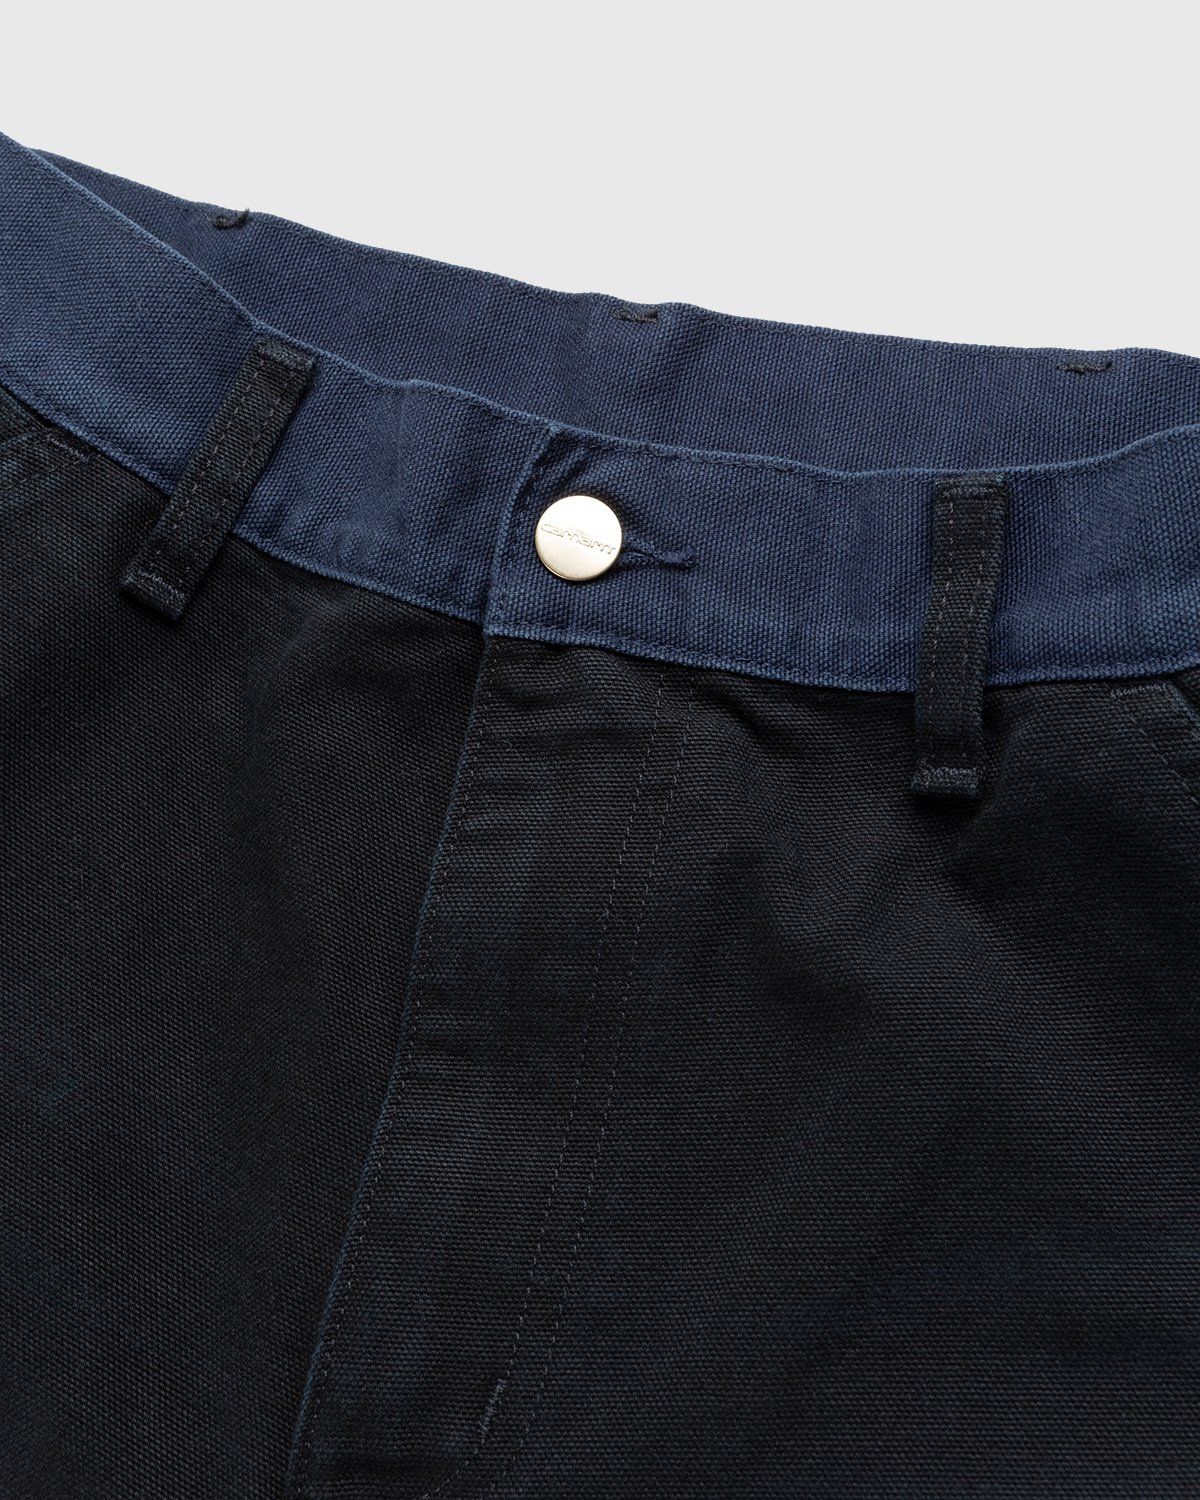 Carhartt WIP – Double Knee Pant Dark Navy - Pants - Blue - Image 4